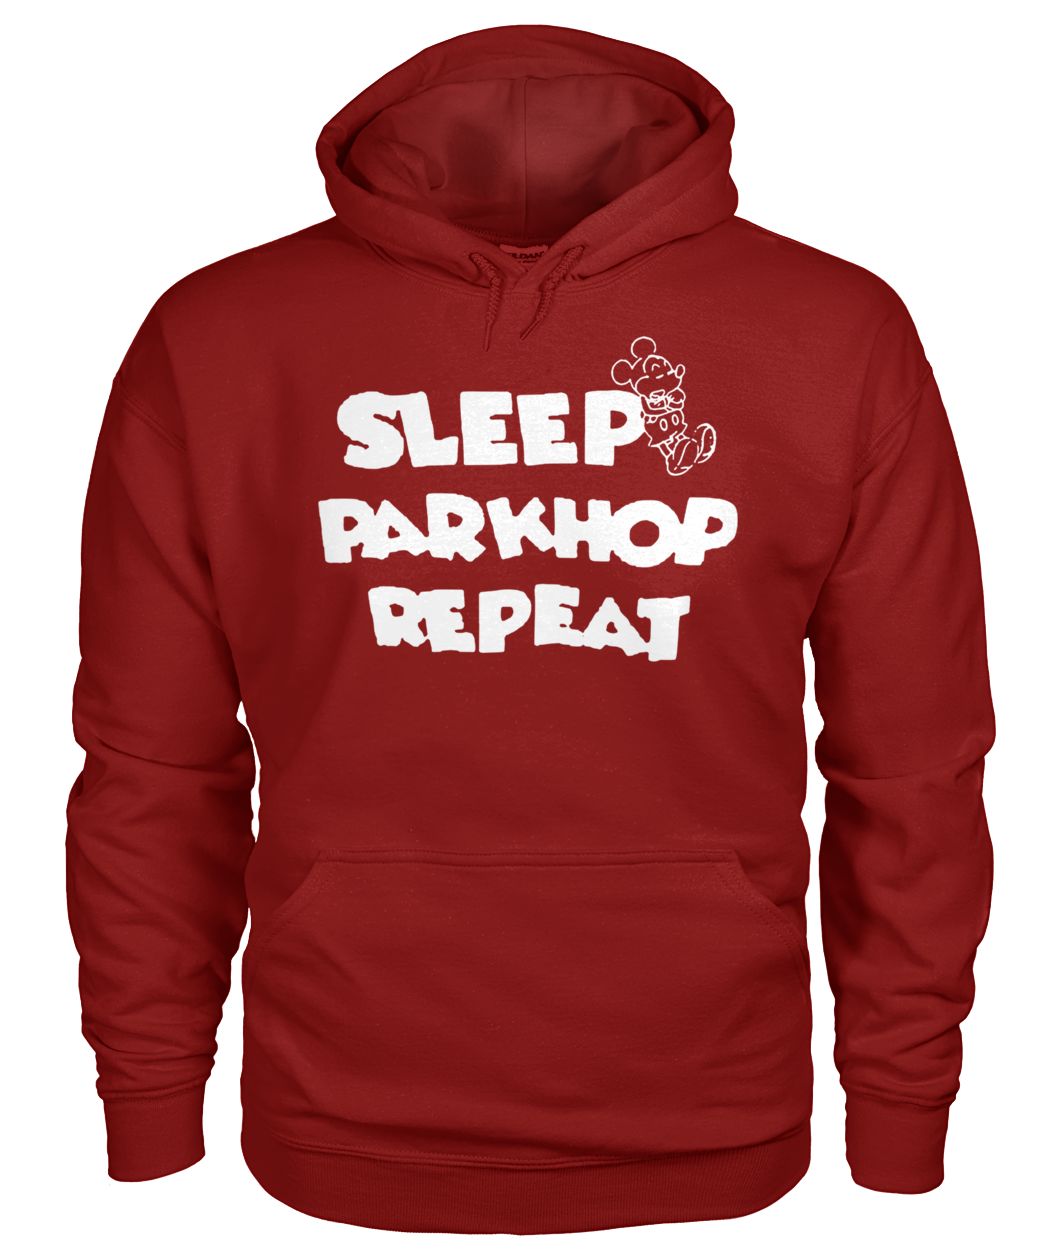 Mickey mouse sleep parkhop repeat gildan hoodie